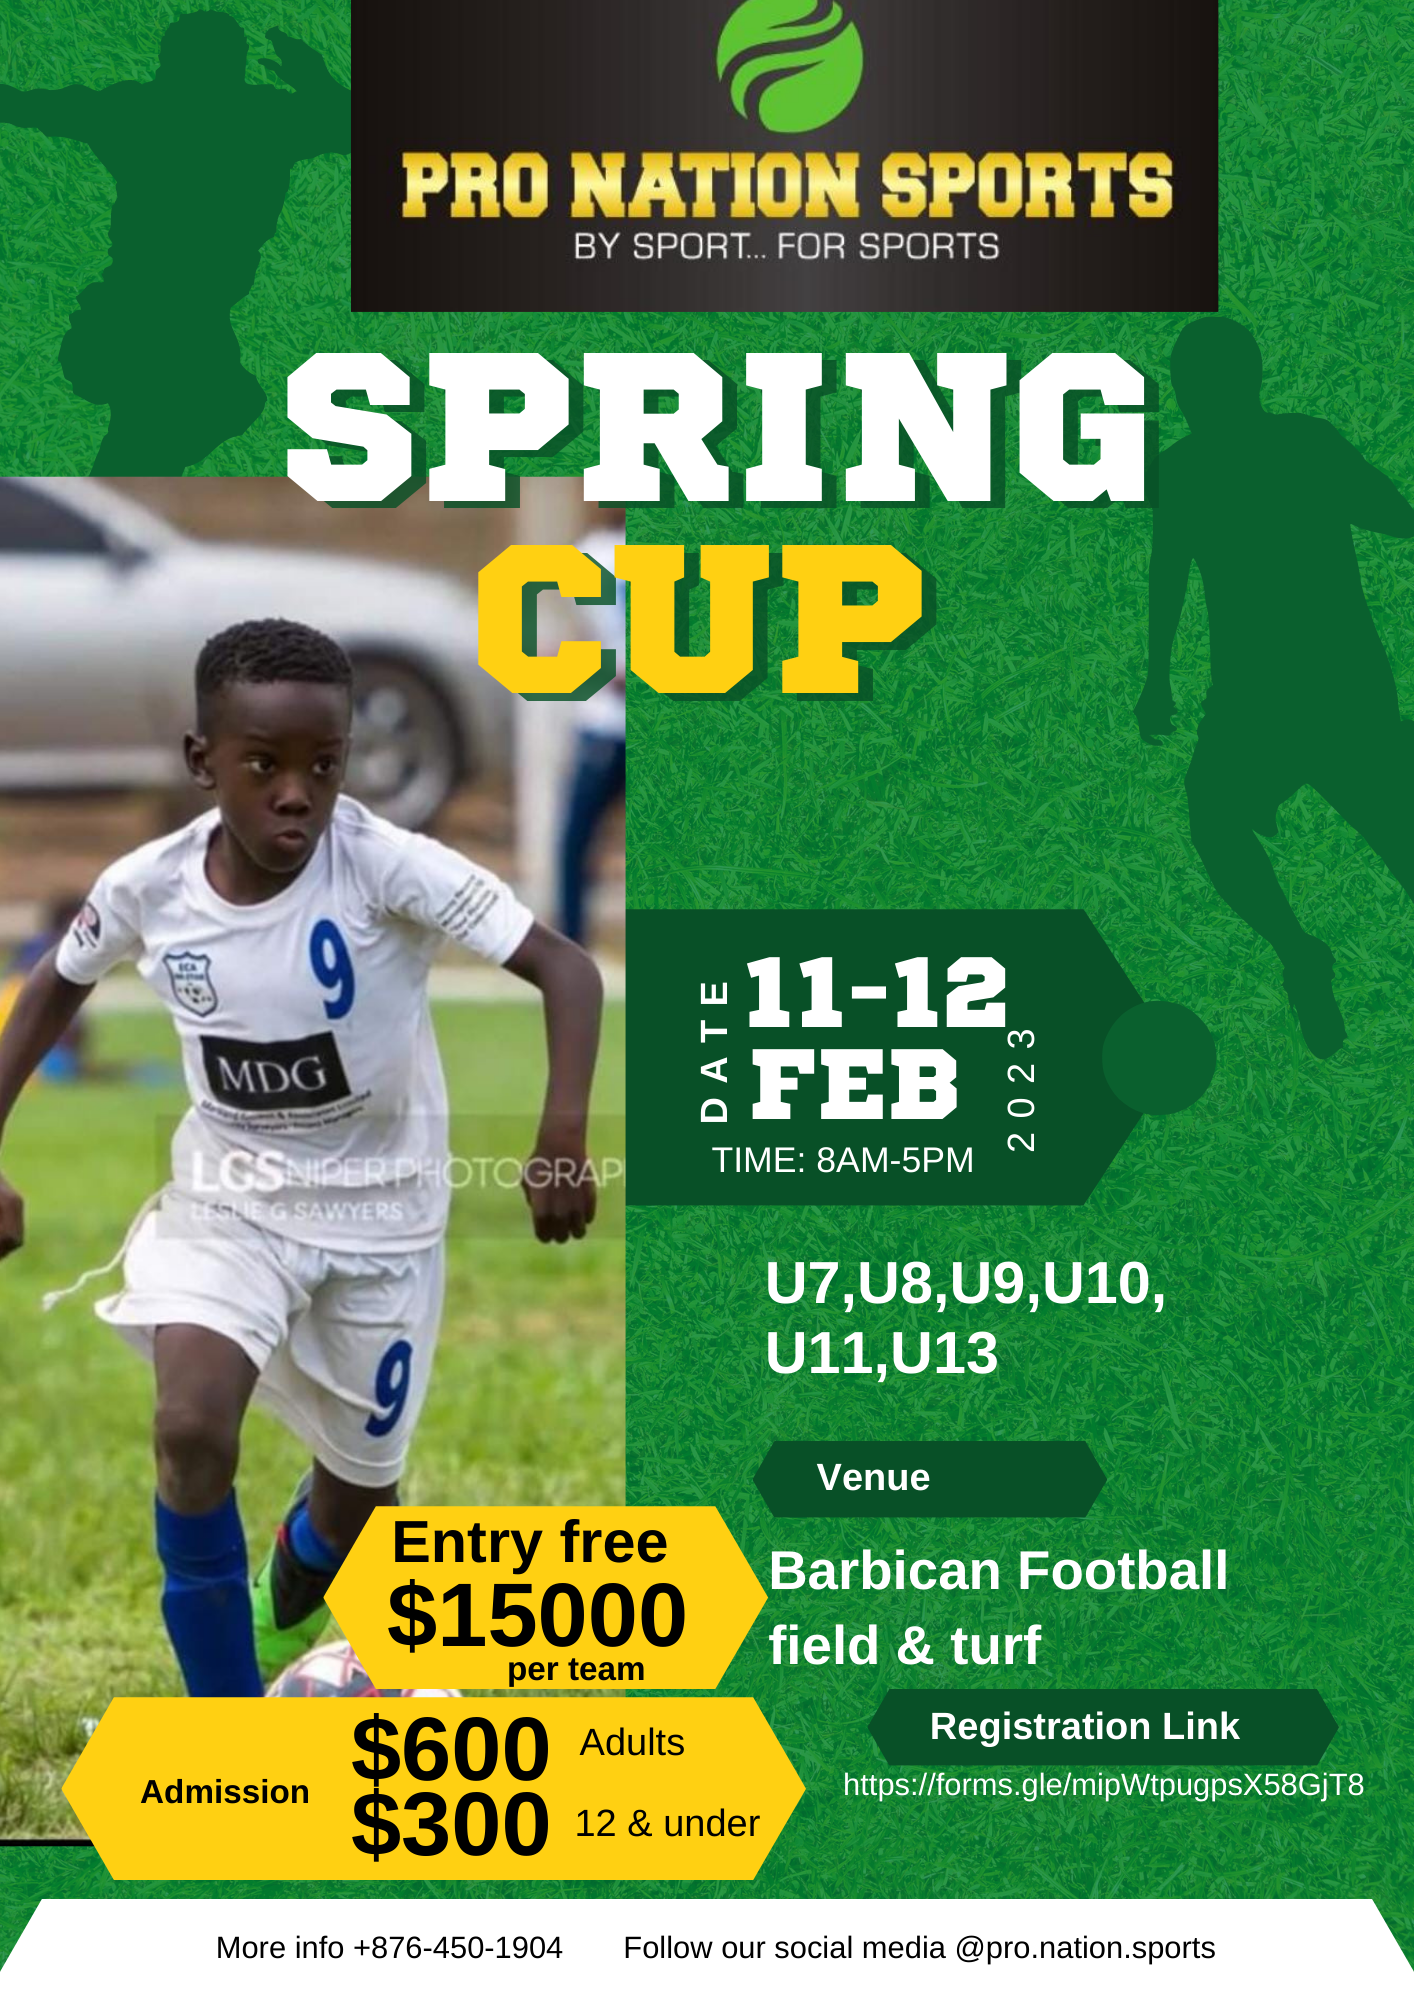 Springs Cup U13